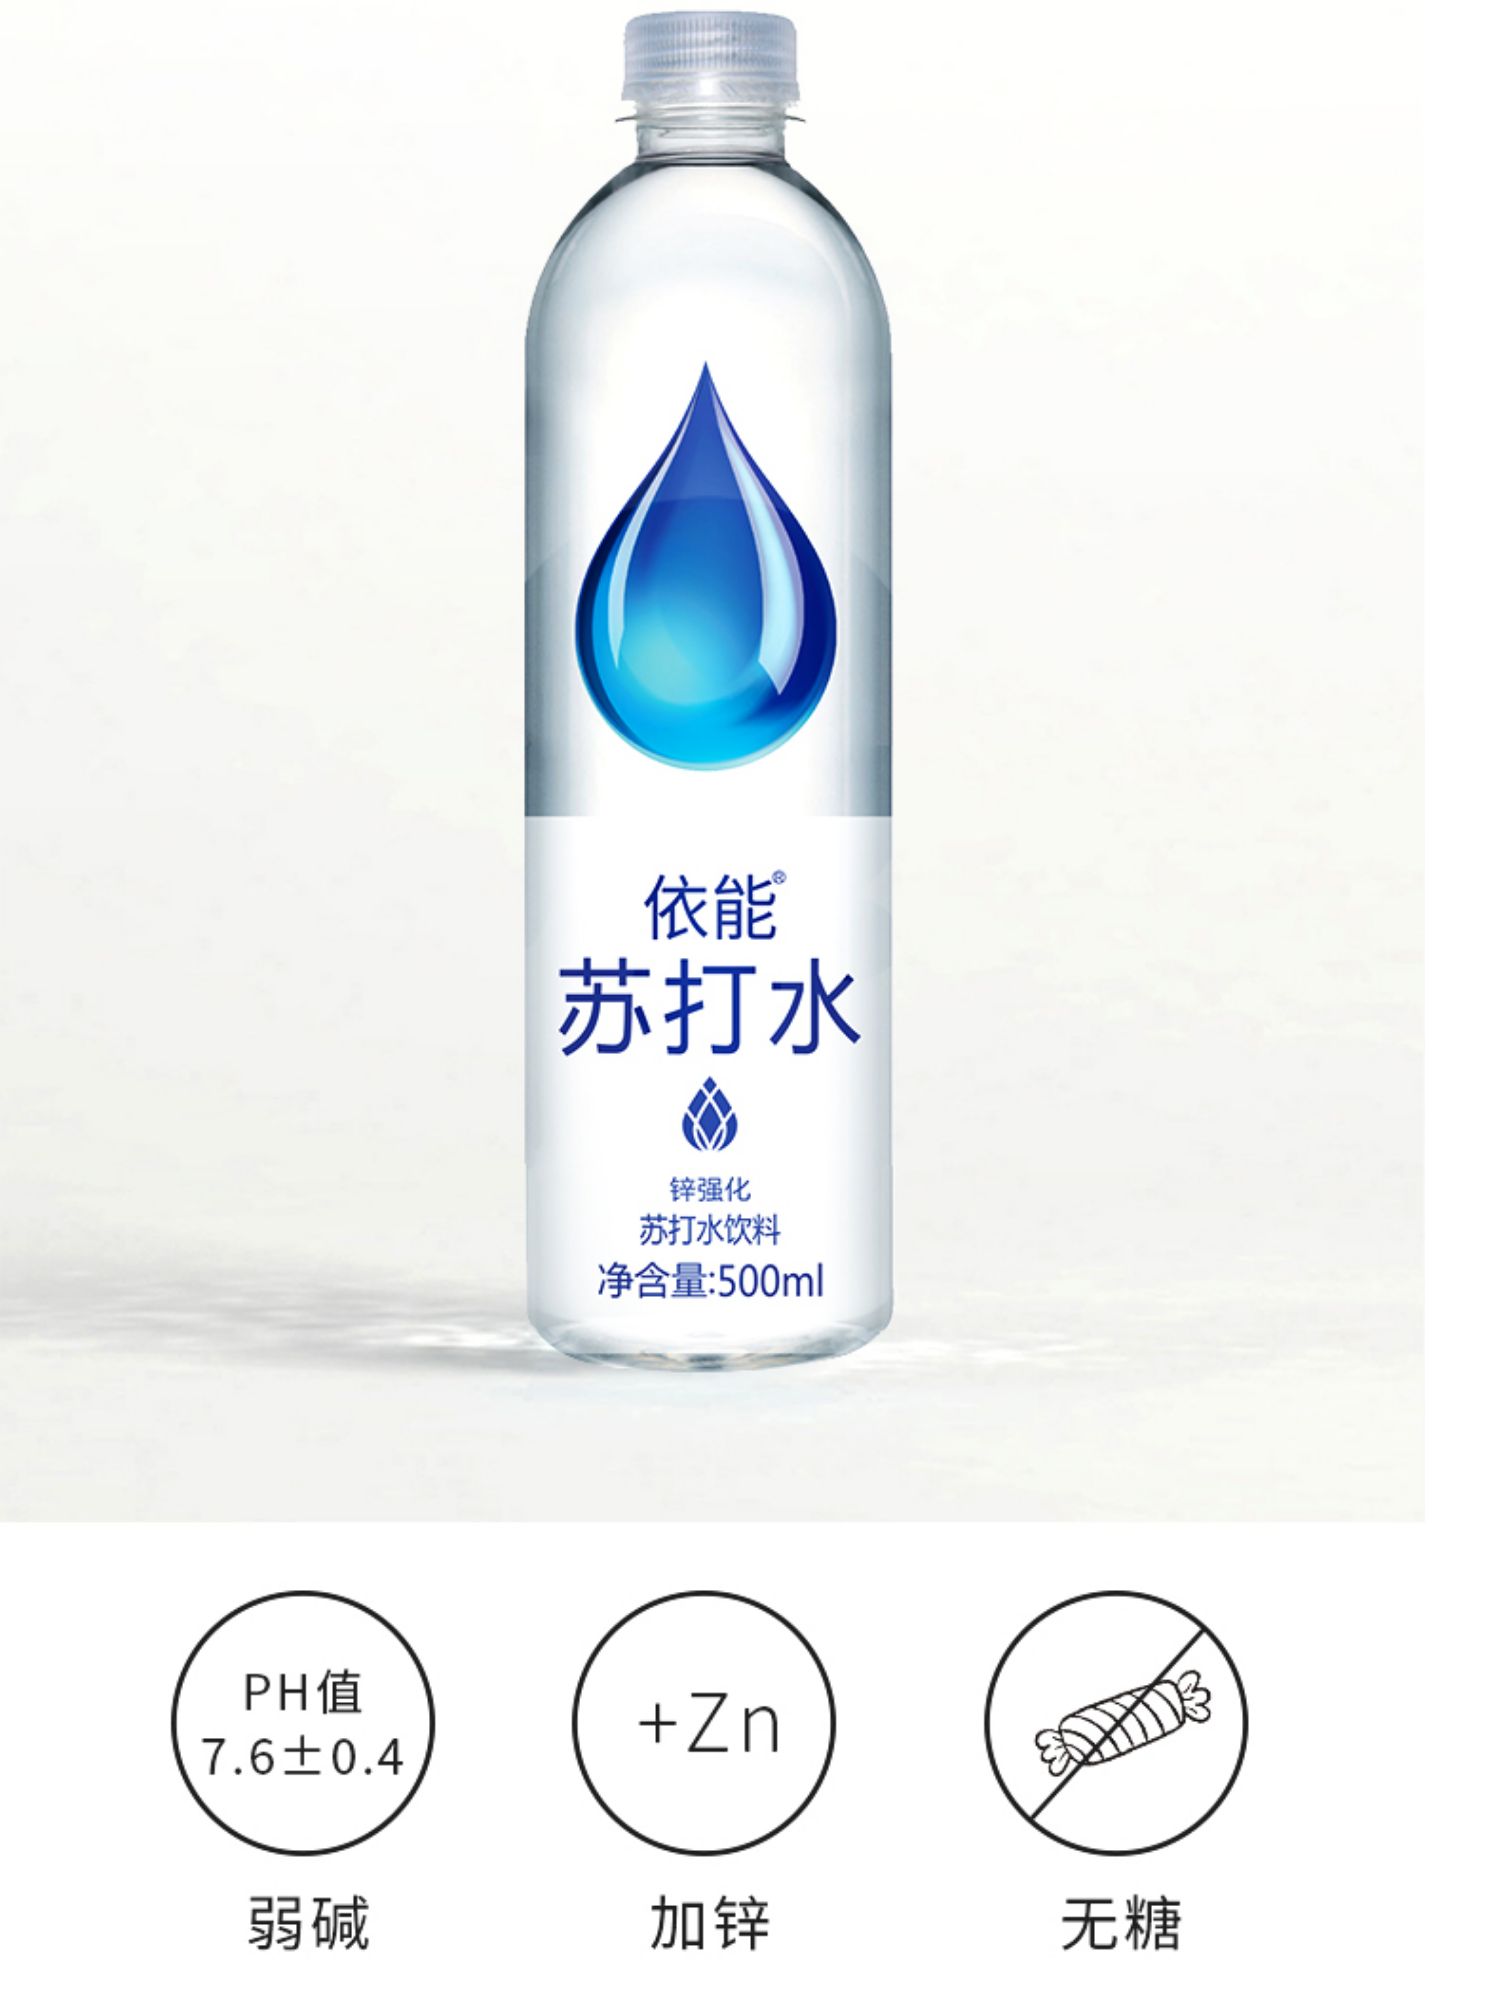 【依能】无糖加锌苏打水12瓶